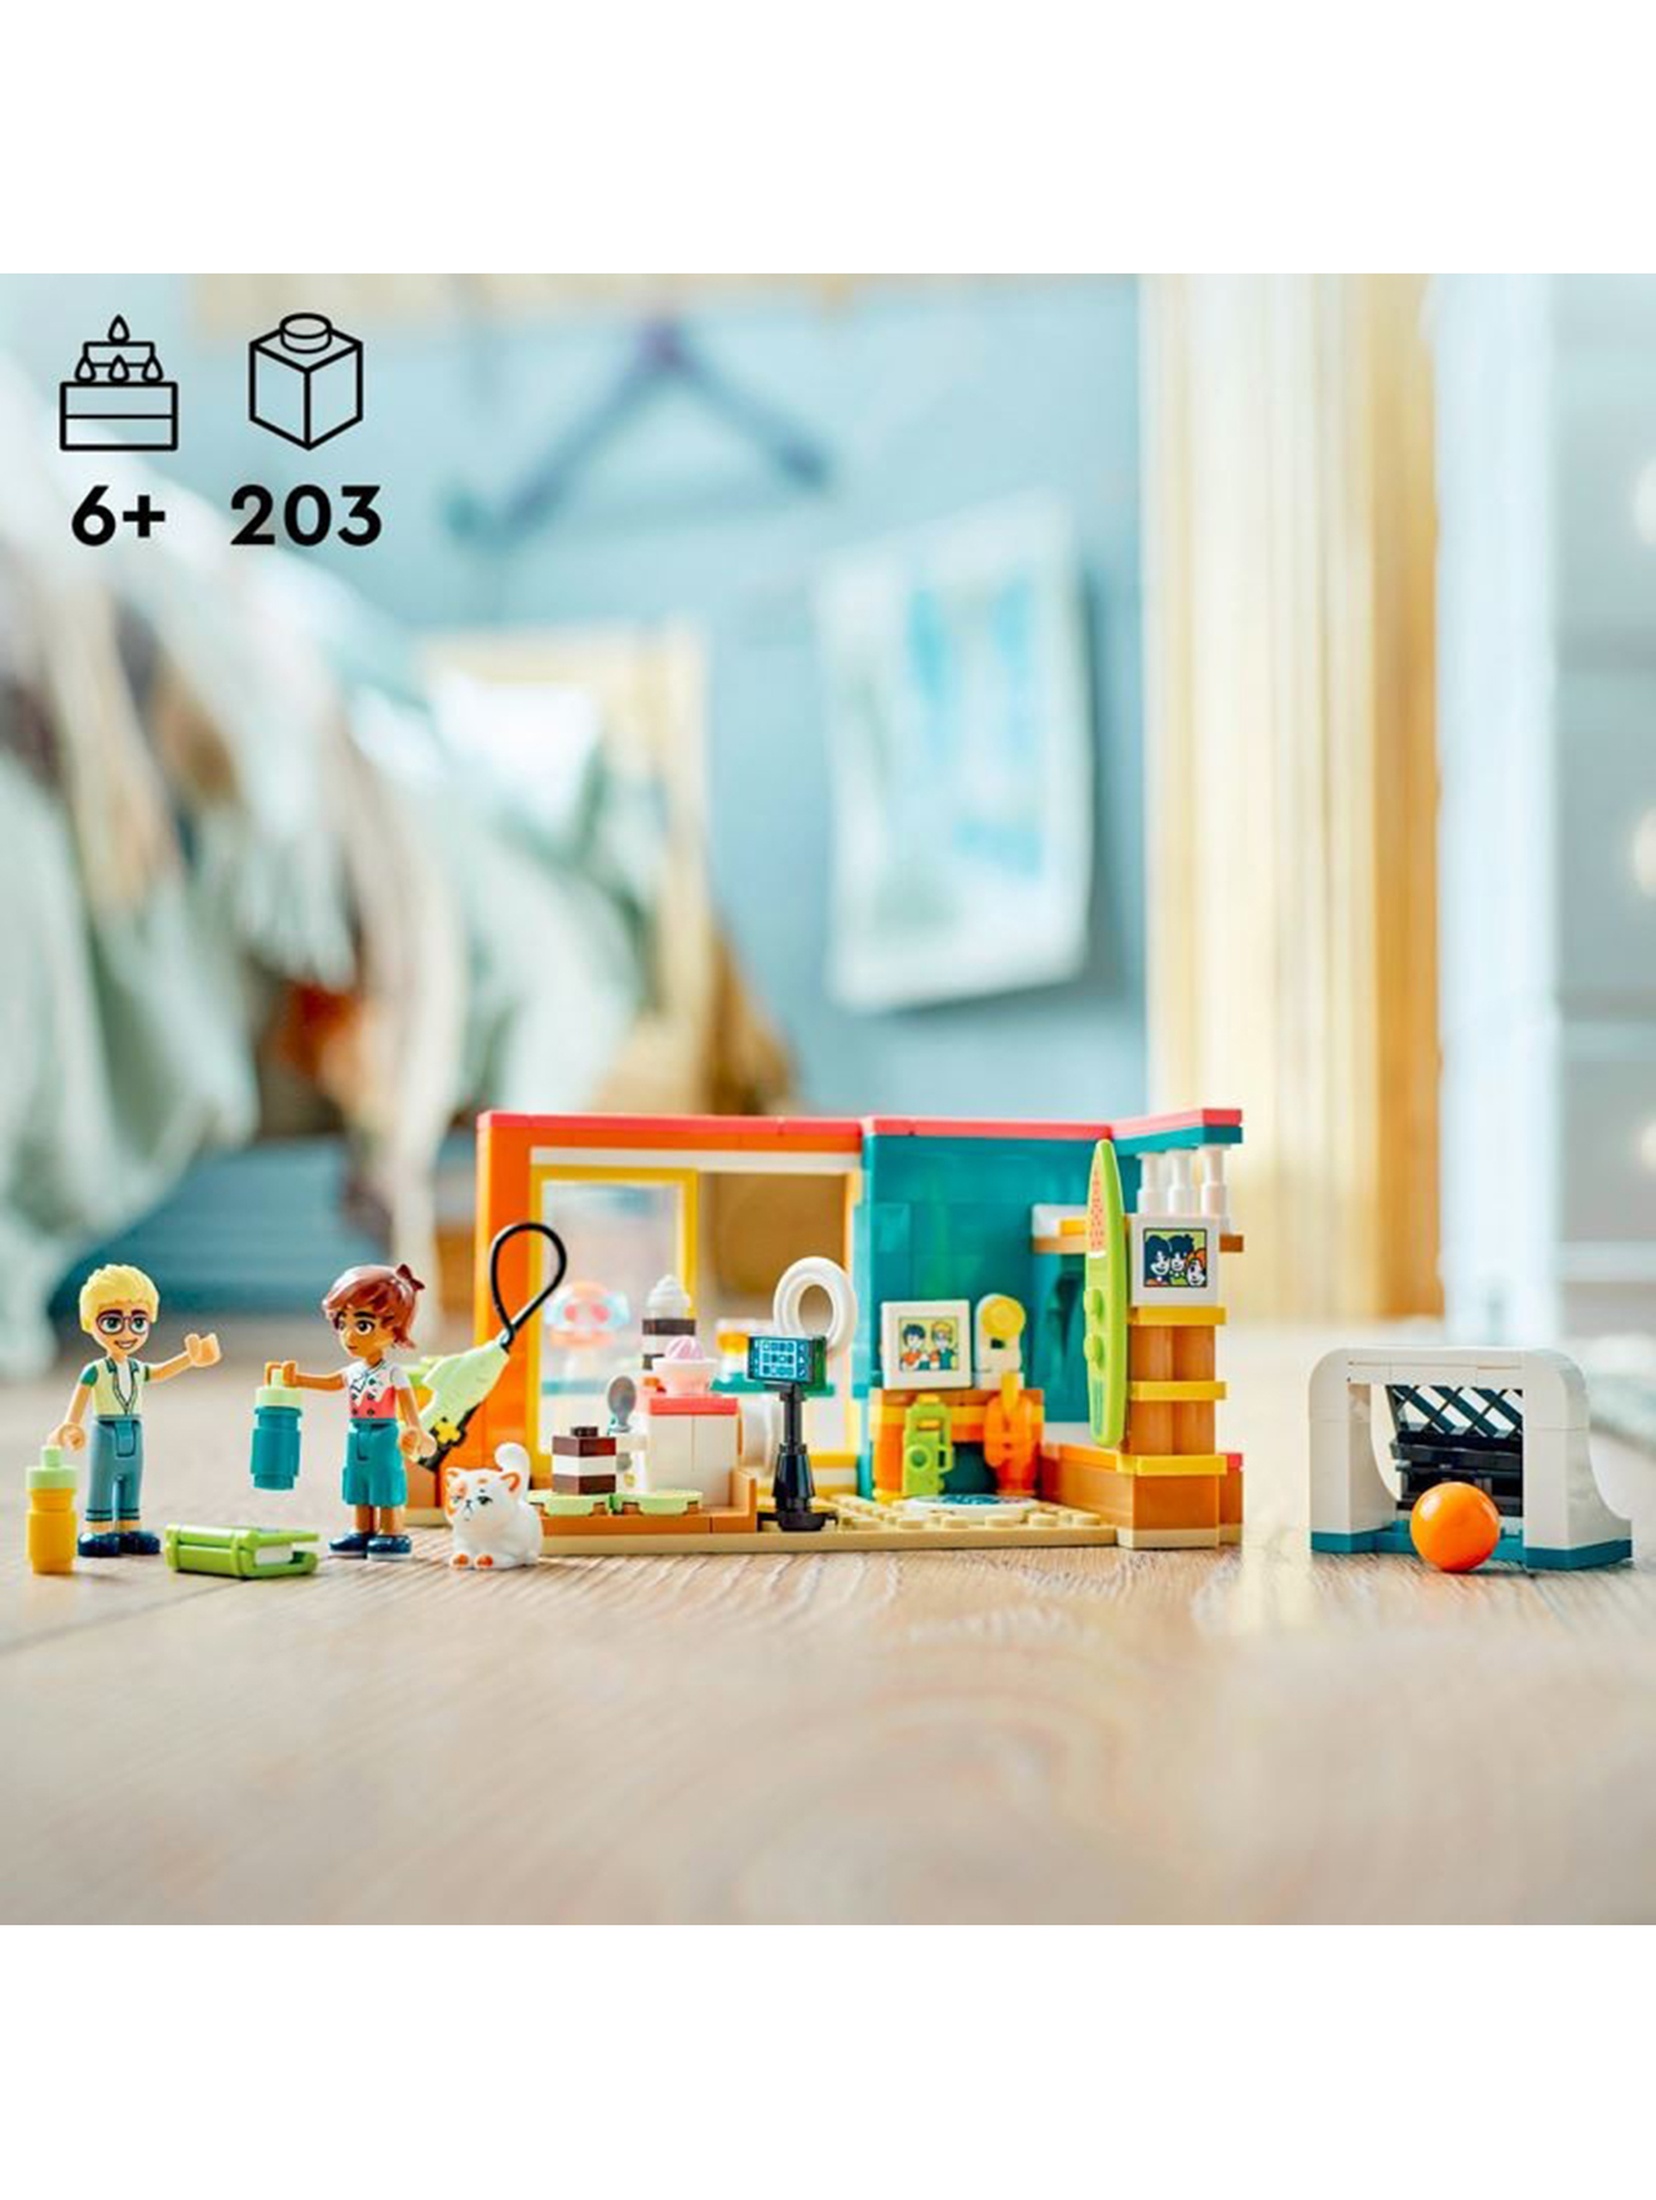 Klocki LEGO Friends 41754 Pokój Leo - 203 elementy, wiek 6 +